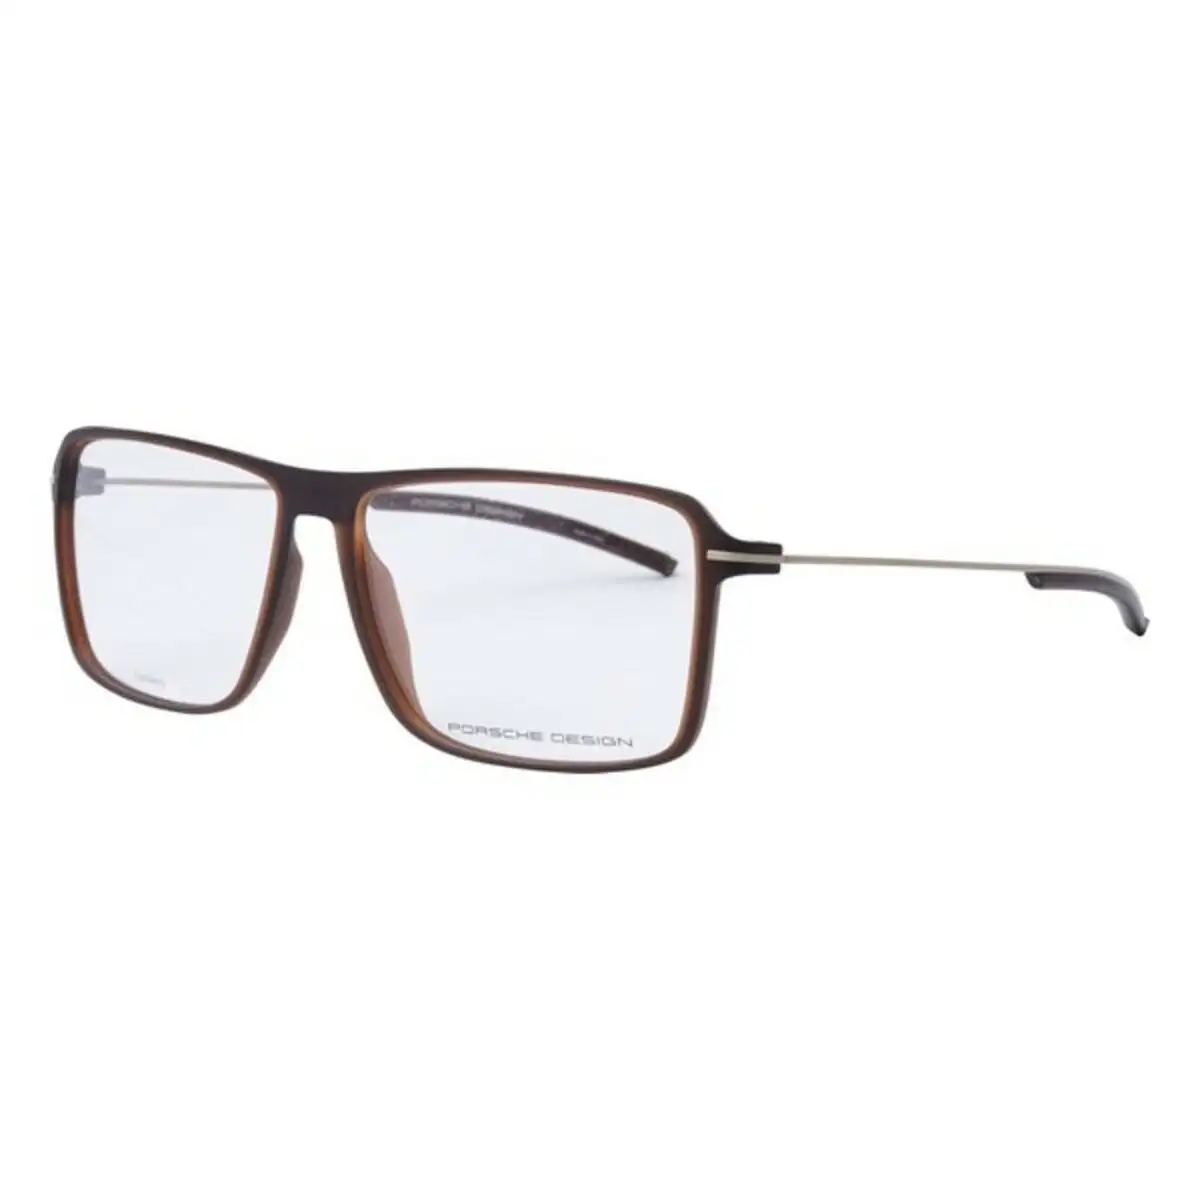 Monture de lunettes homme porsche p8295 b marron o 58 mm _6754. DIAYTAR SENEGAL - Votre Passage vers le Chic et l'Élégance. Naviguez à travers notre boutique en ligne pour trouver des produits qui ajoutent une touche sophistiquée à votre style.